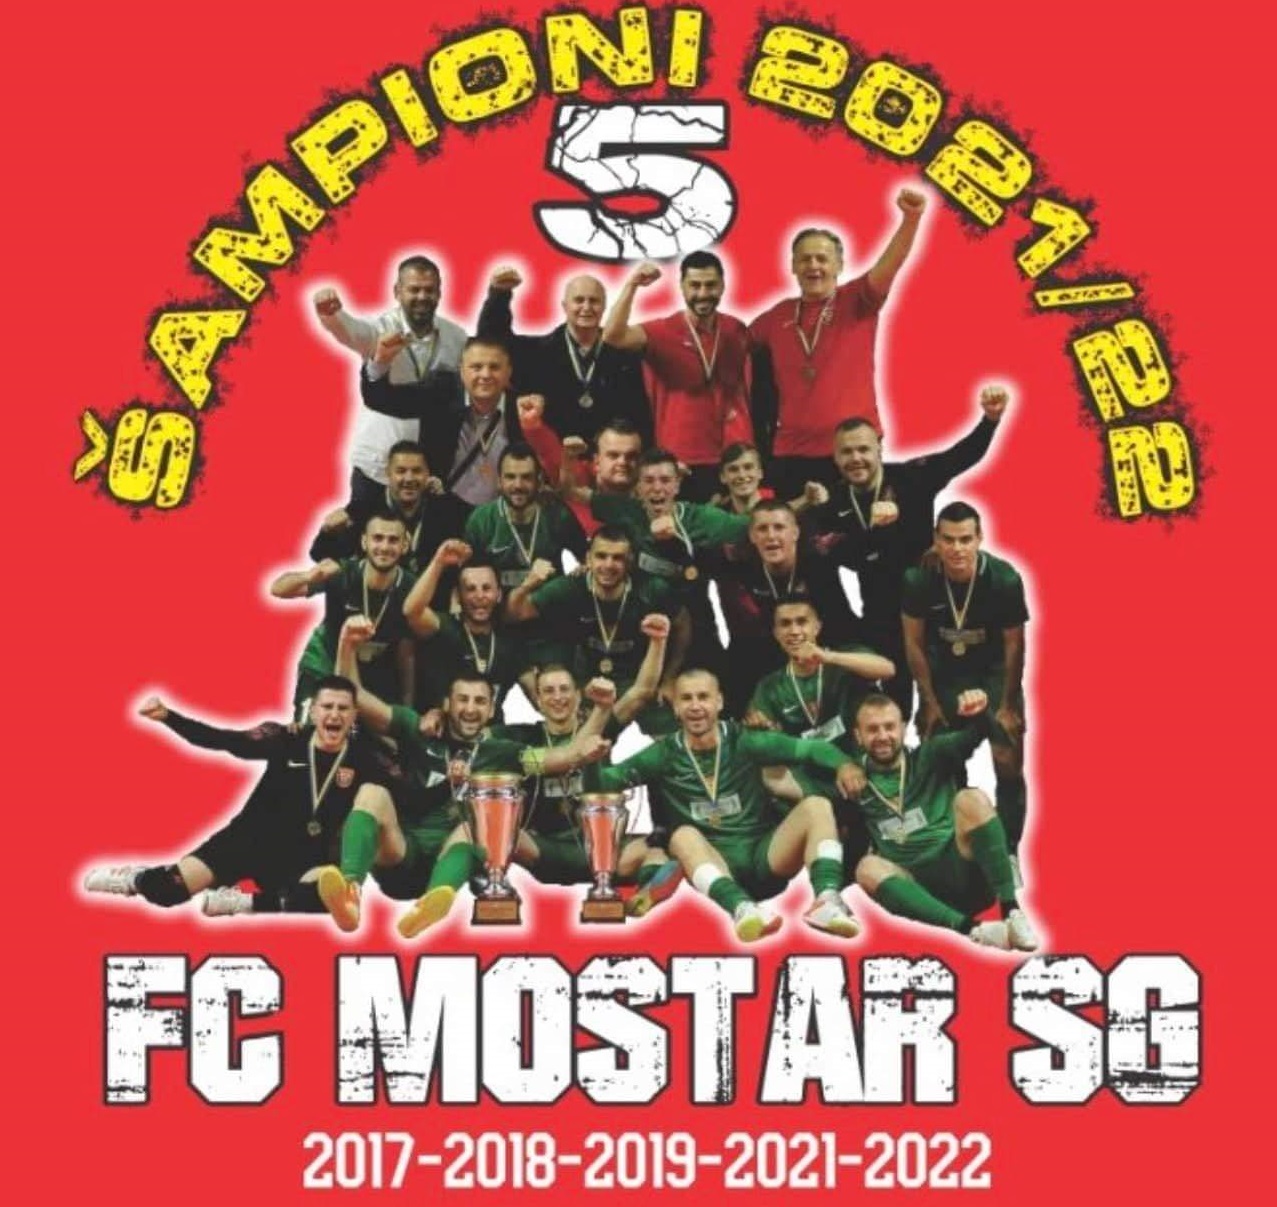 Liga prvaka ponovo dolazi u BiH, futsaleri Mostar SG na odličnom 15-tom mjestu u Europi